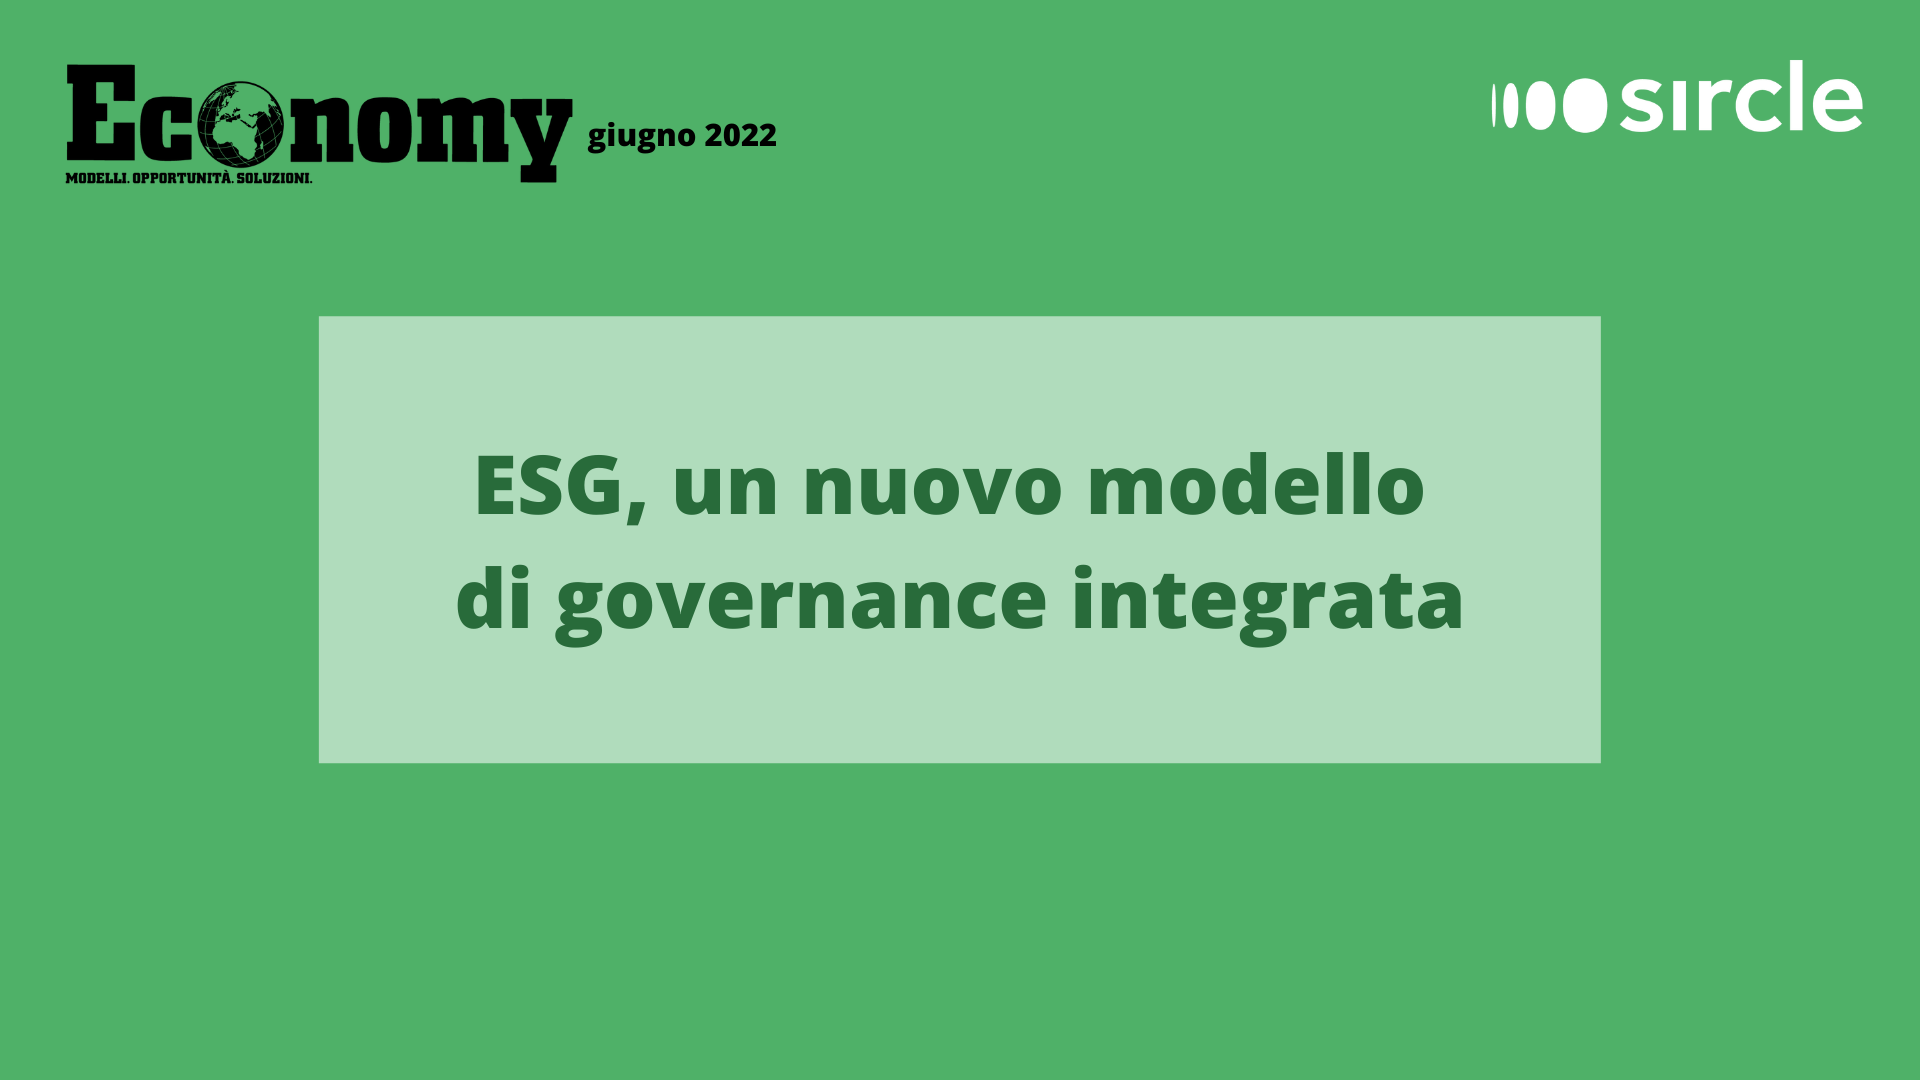 ESG, un nuovo modello di governance integrata